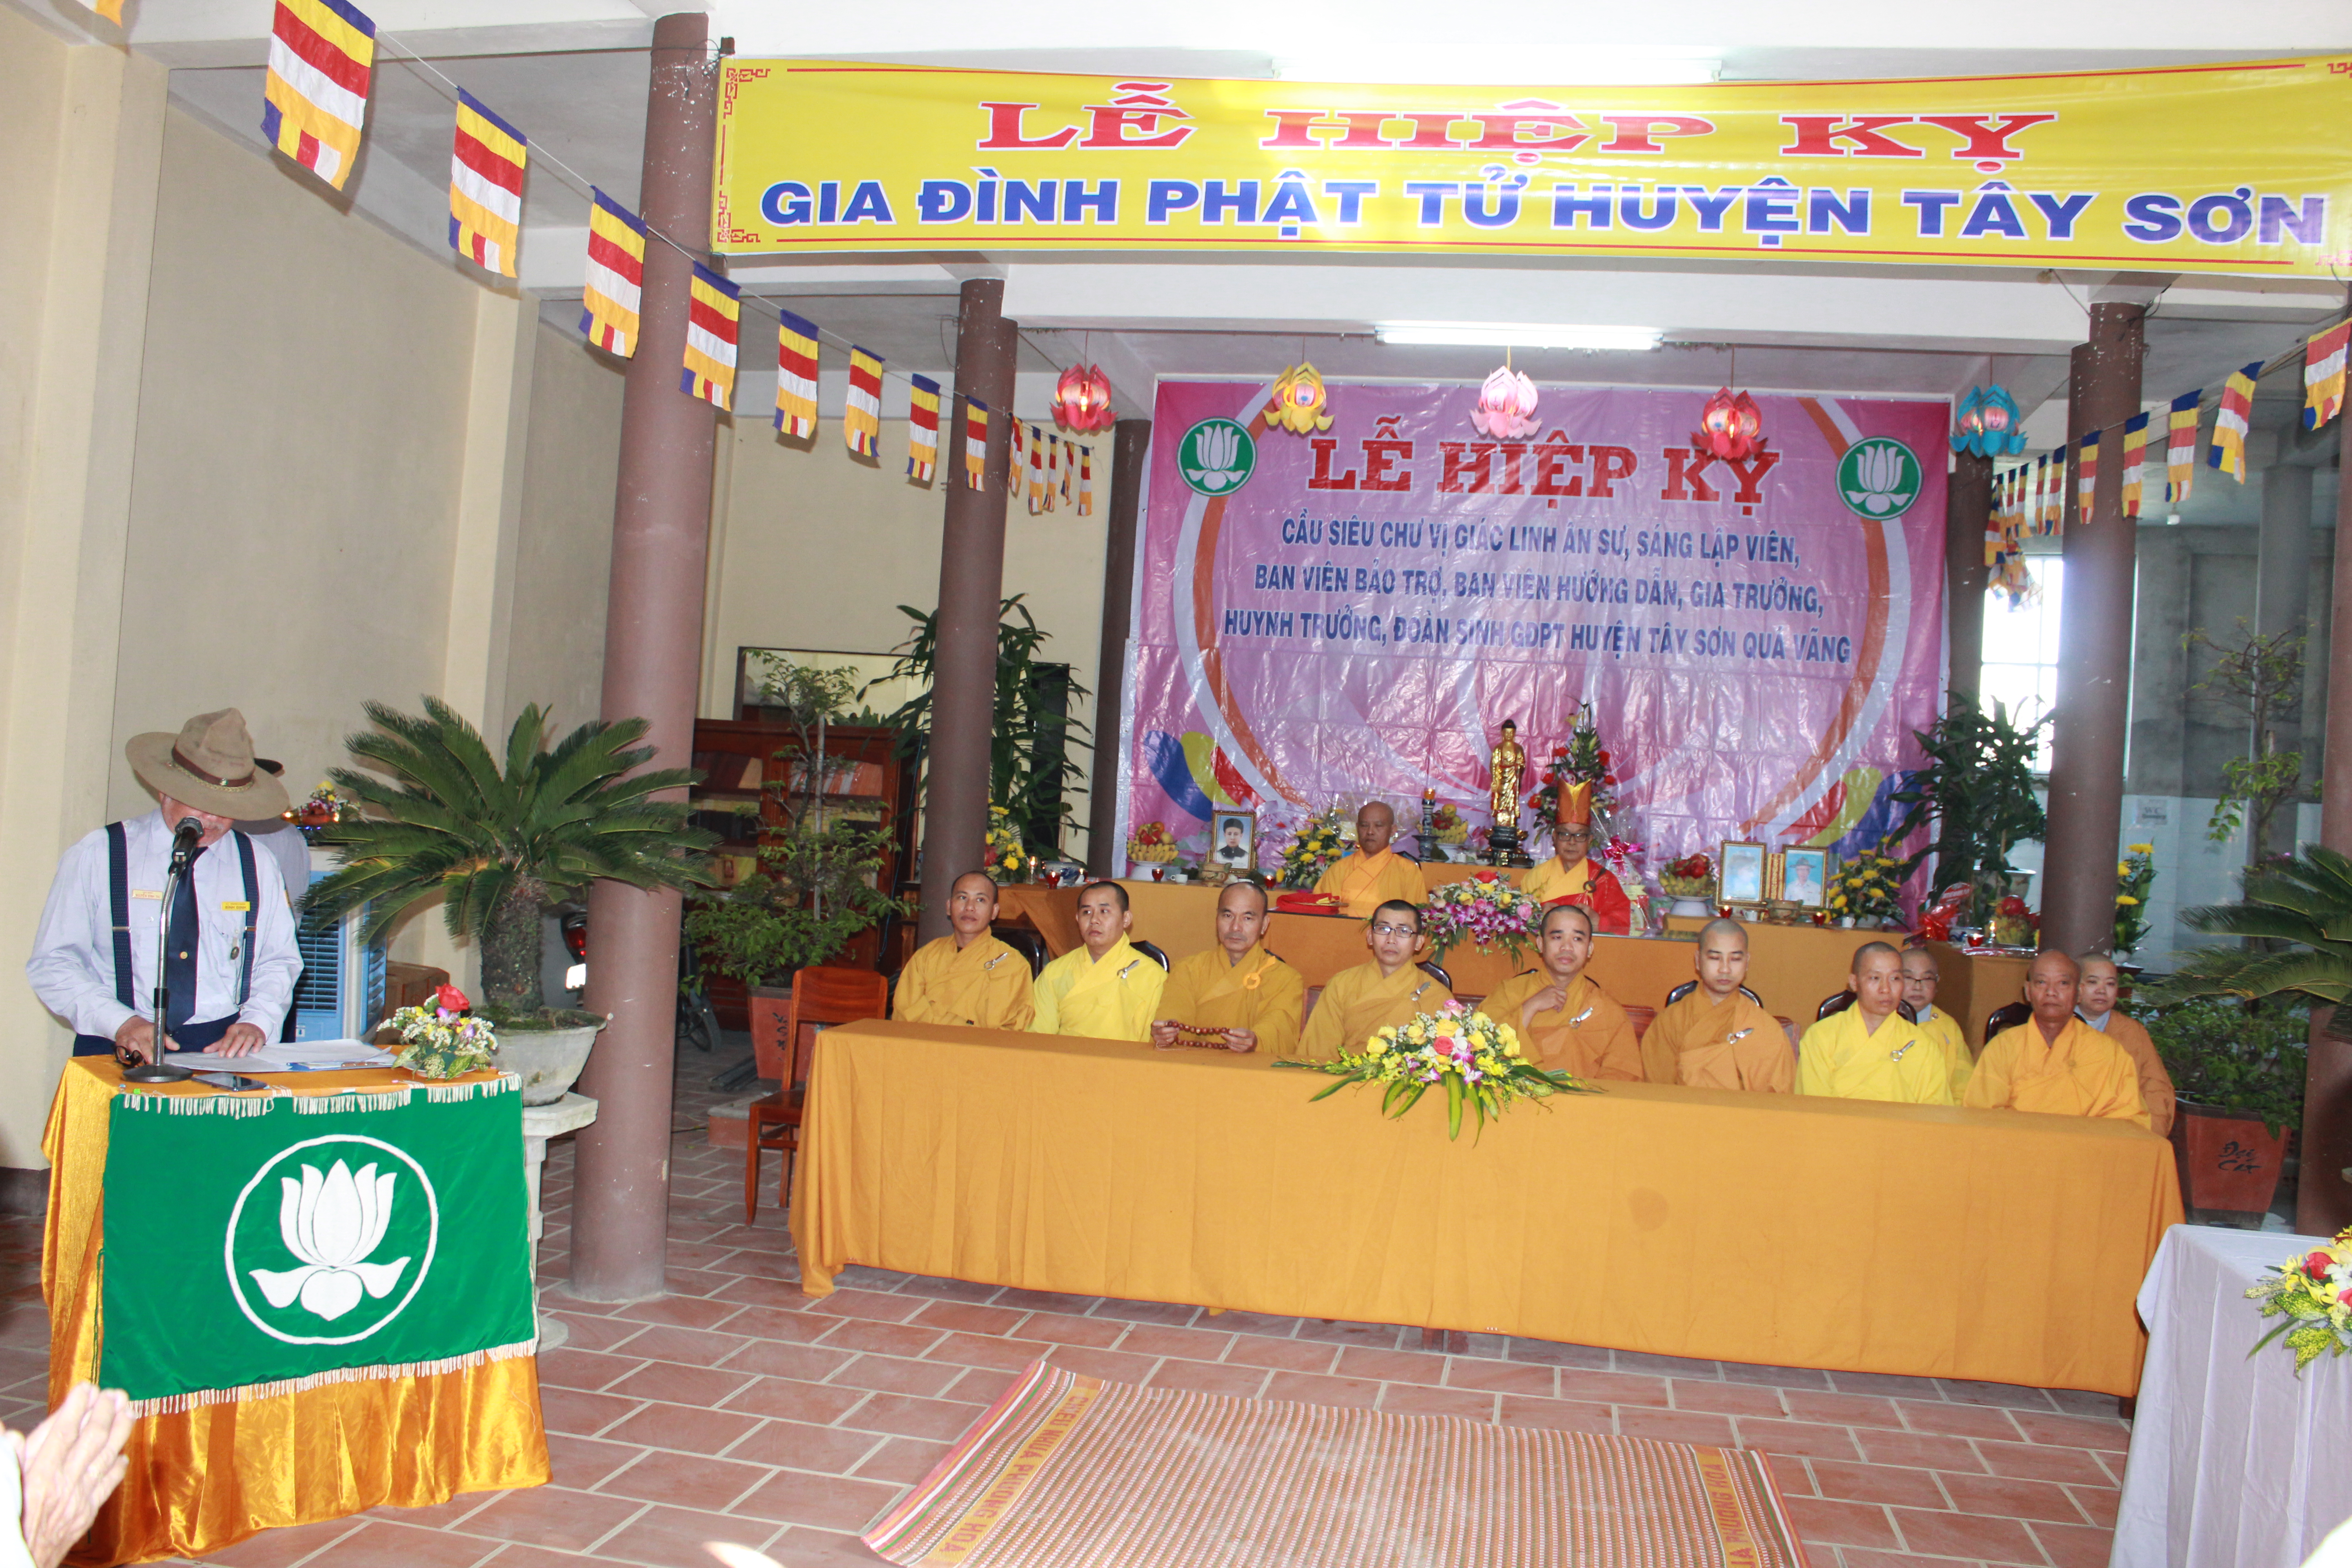 GĐPT huyện Tây Sơn tổ chức Lễ Hiệp kỵ năm 2019